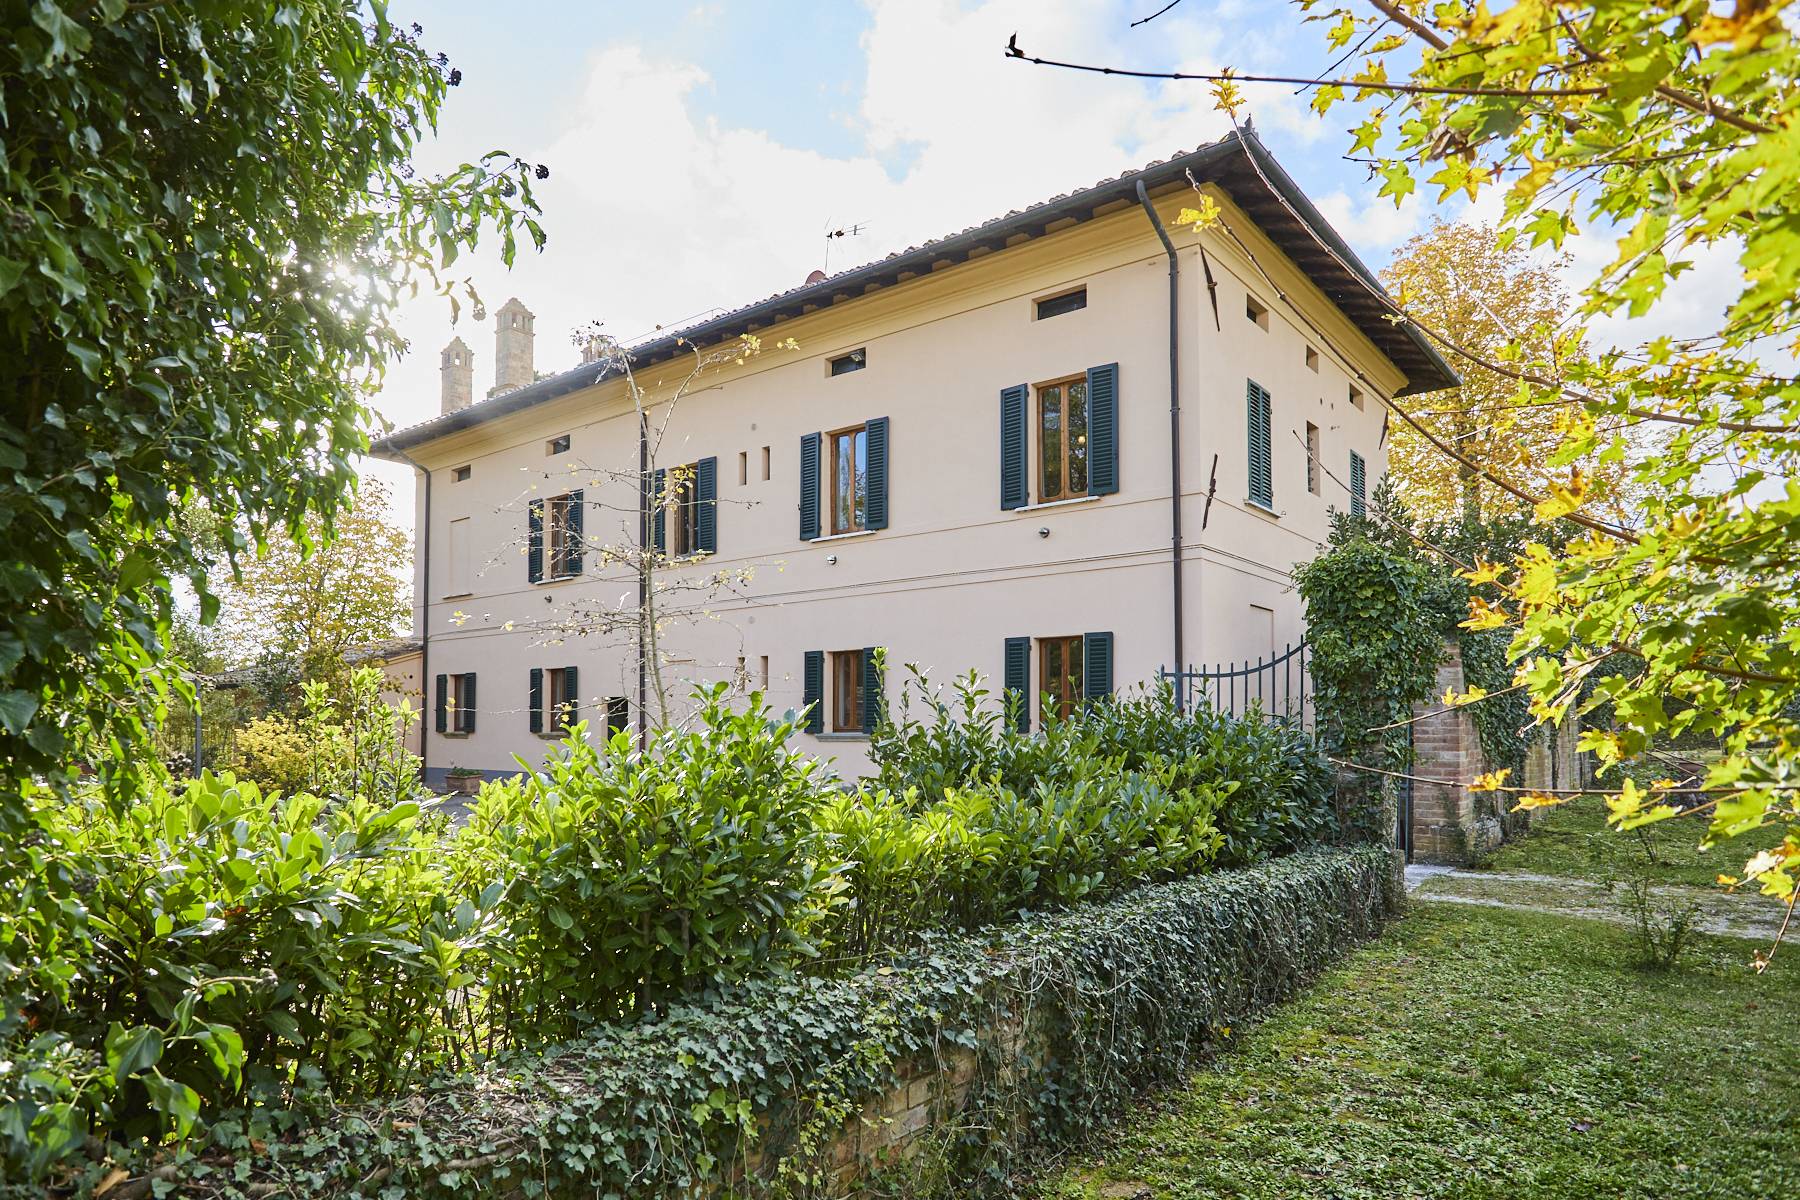 Villa in Vendita a Montepulciano: 5 locali, 860 mq - Foto 2